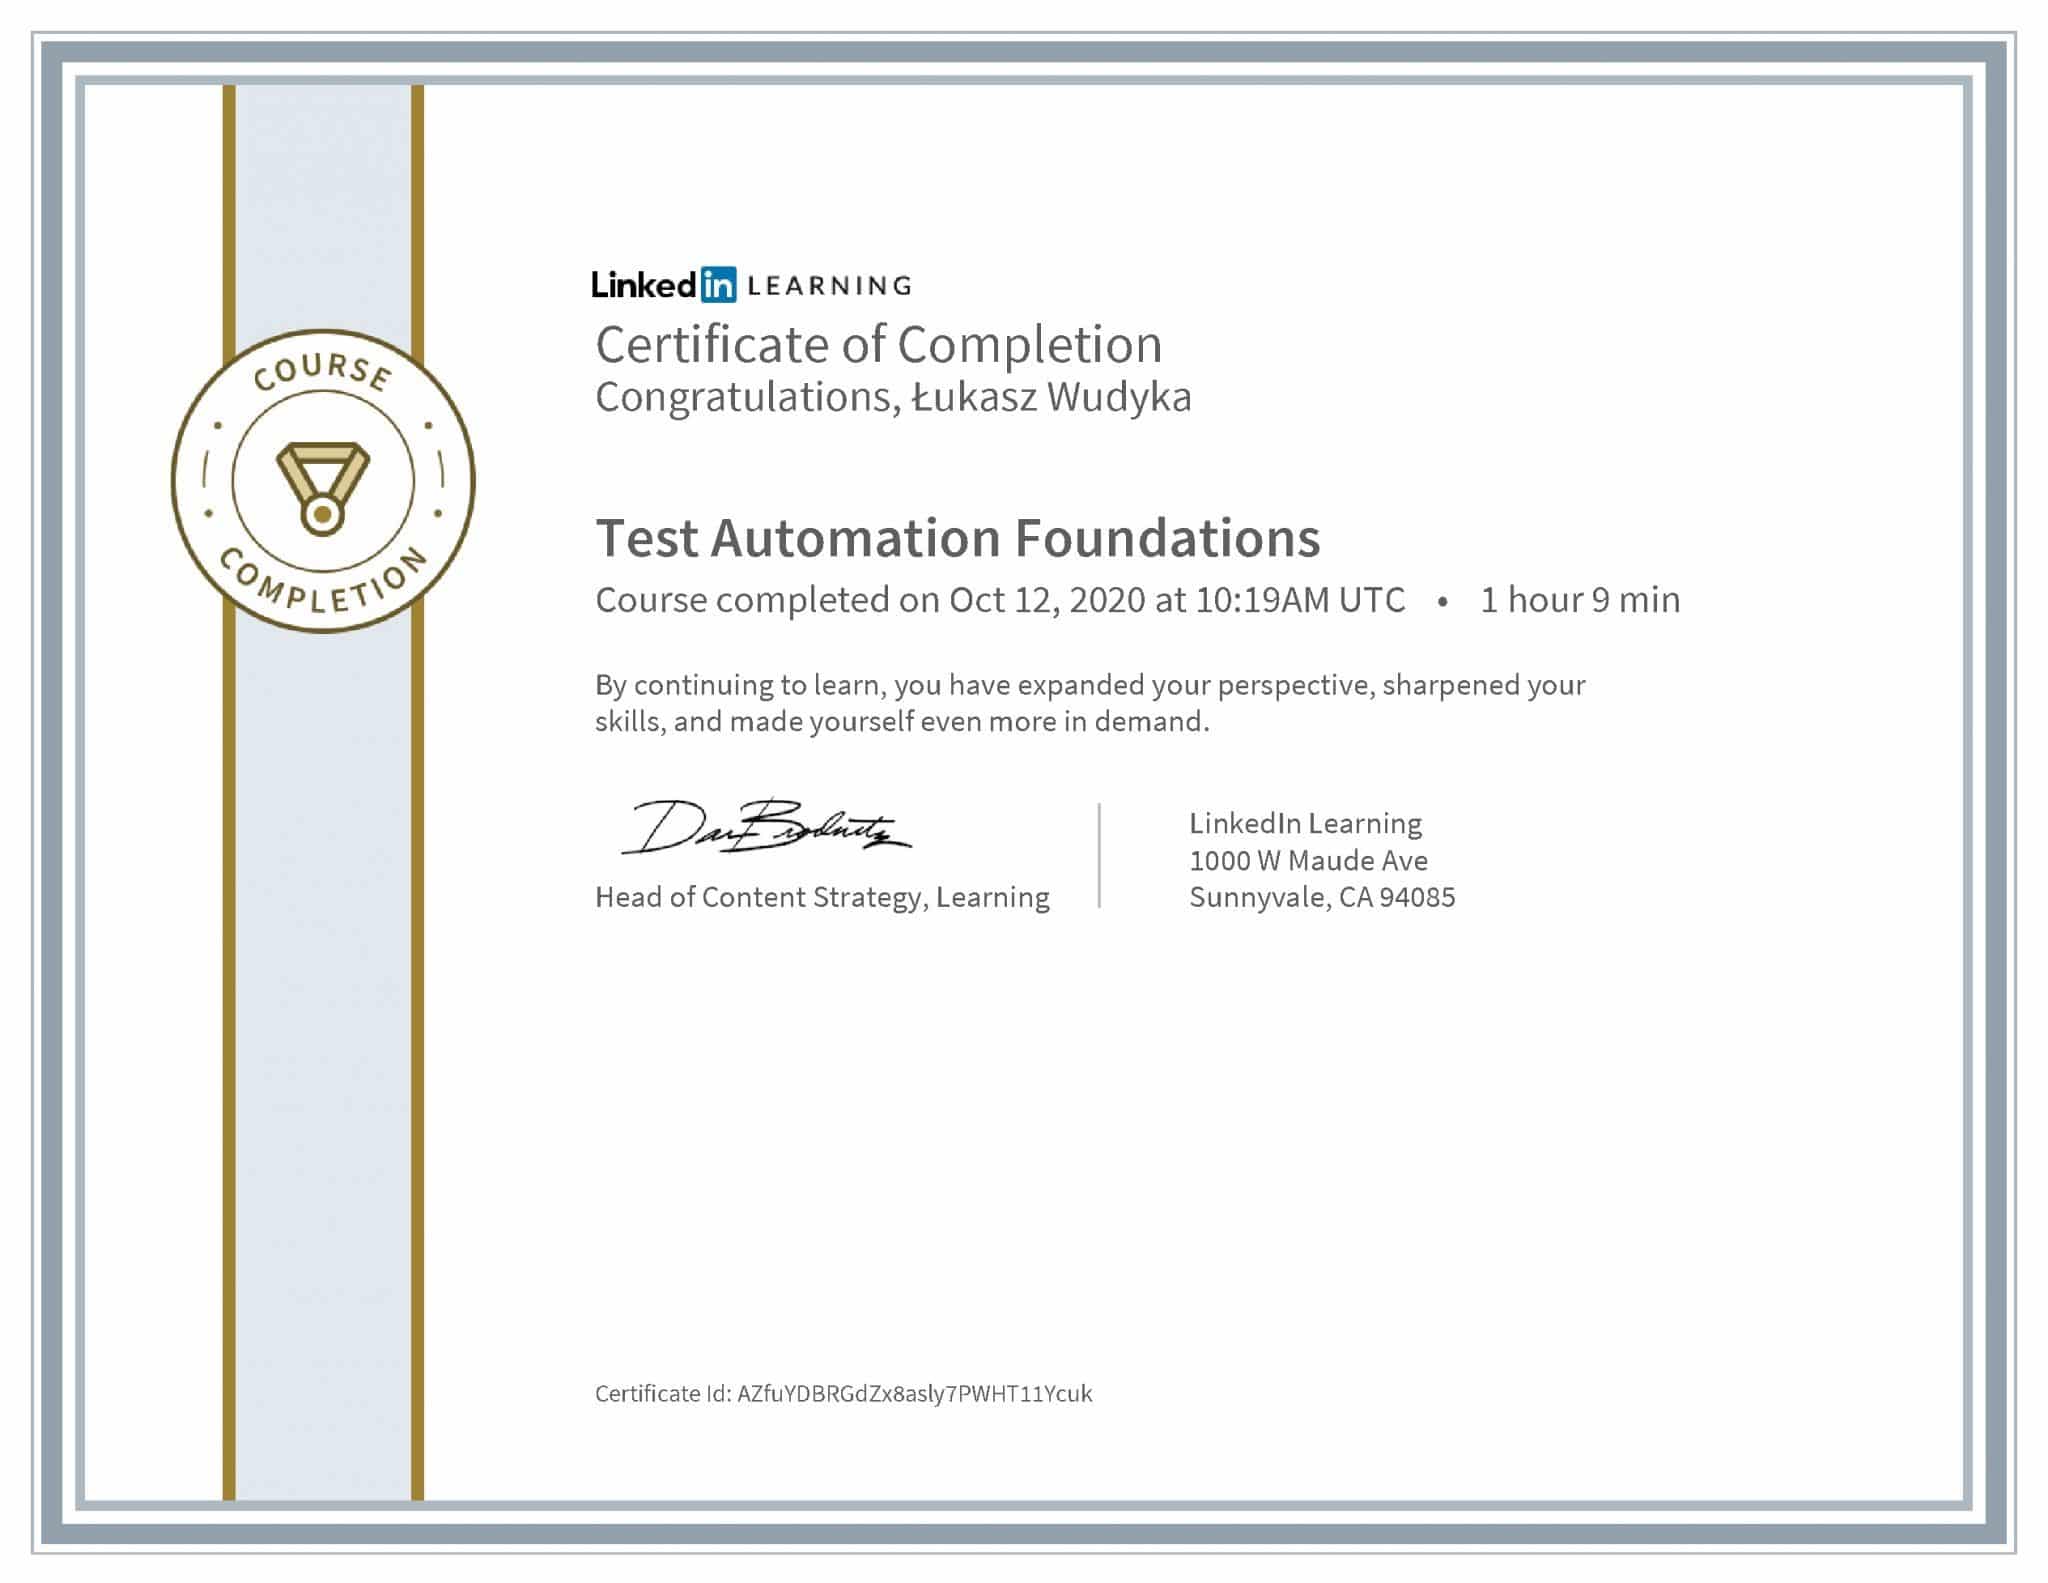 Łukasz Wudyka certyfikat LinkedIn Test Automation Foundations